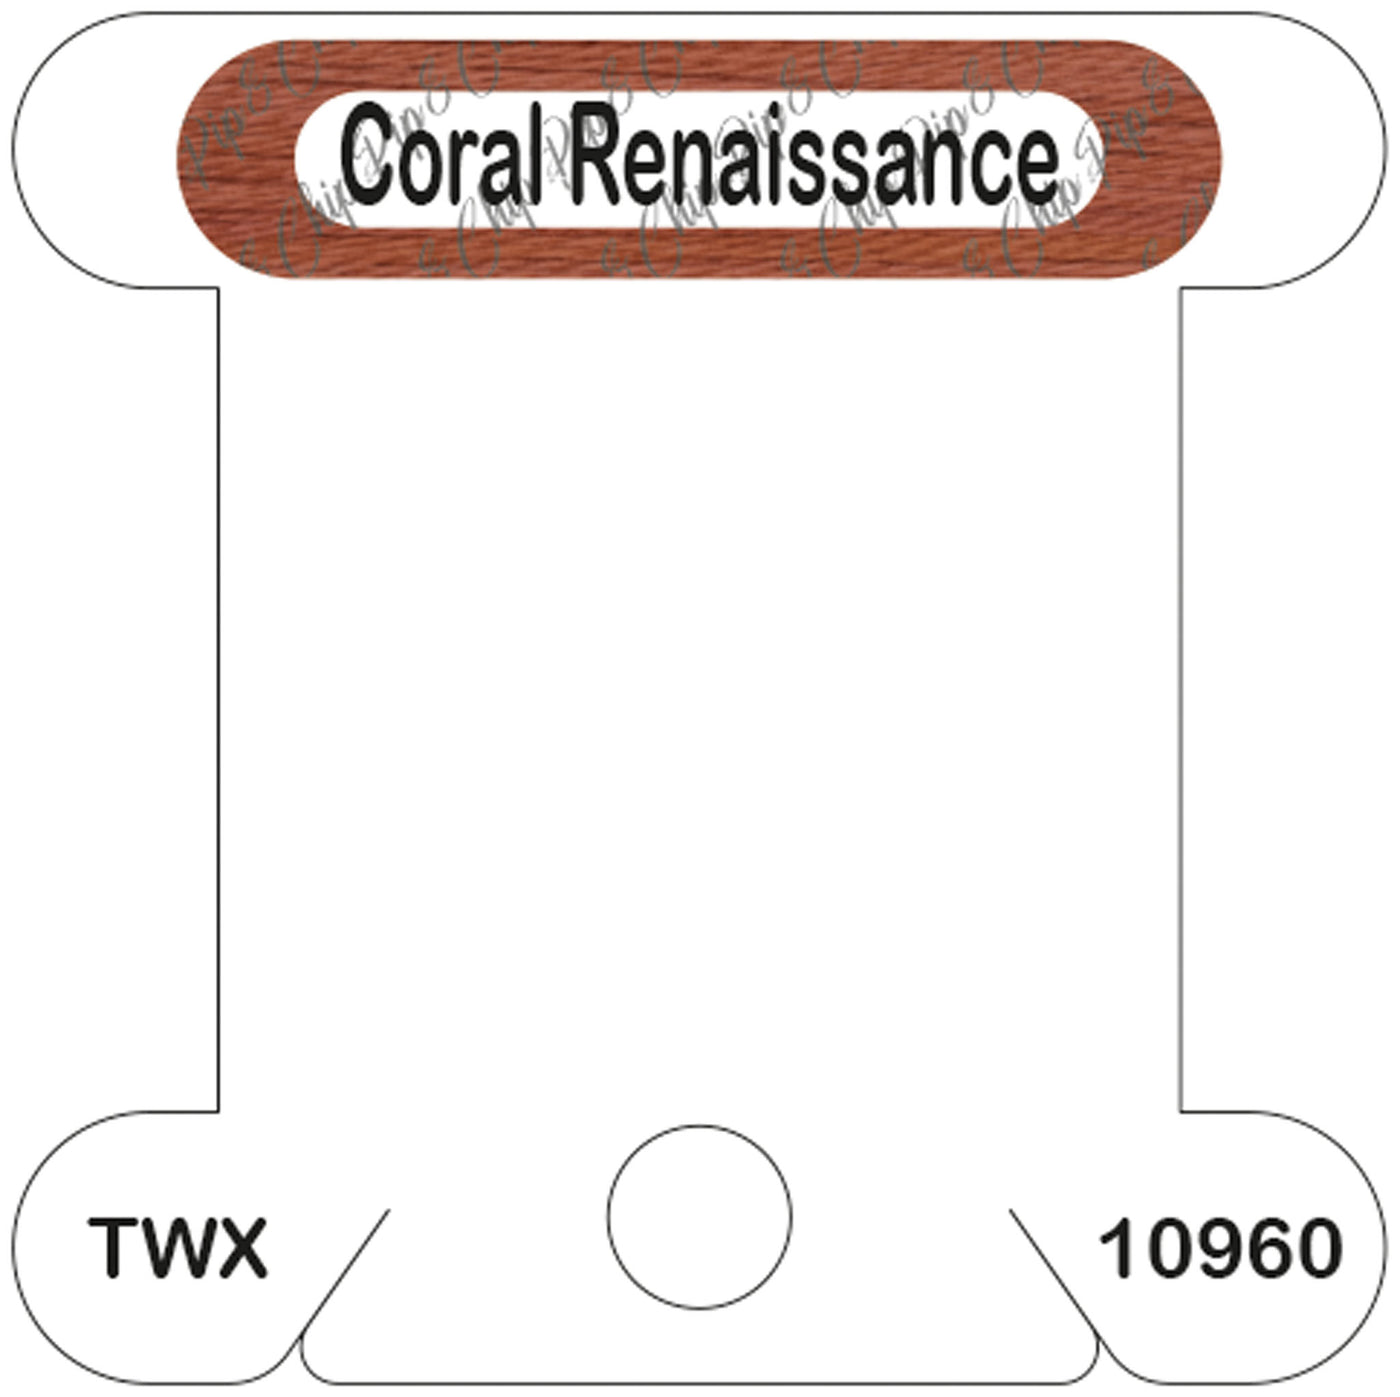 ThreadworX Coral Renaissance acrylic bobbin